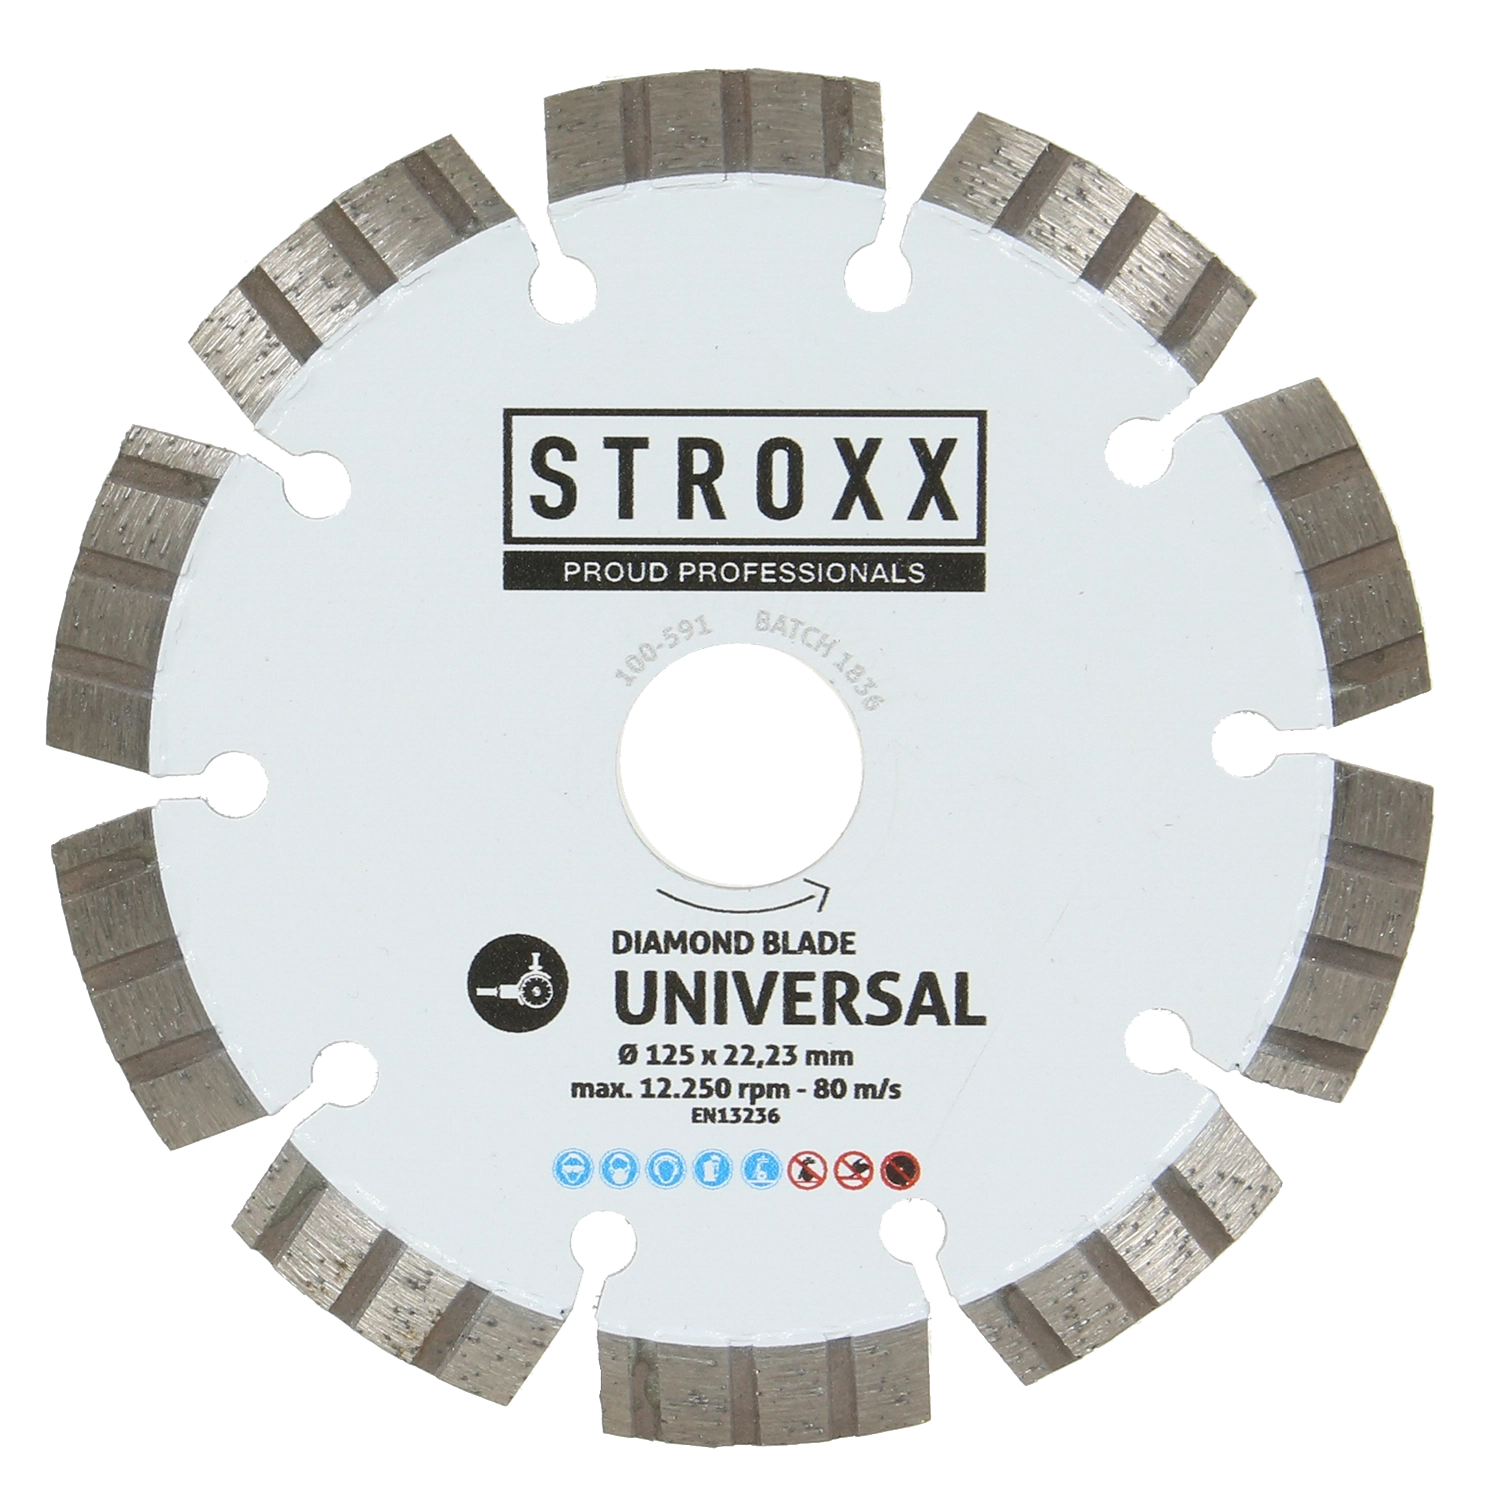 Wit STROXX diamantzaagblad voor beton en tegels. 10 tanden. Met inkepingen. Bevat afmetingen en gebruiksaanwijzingen.